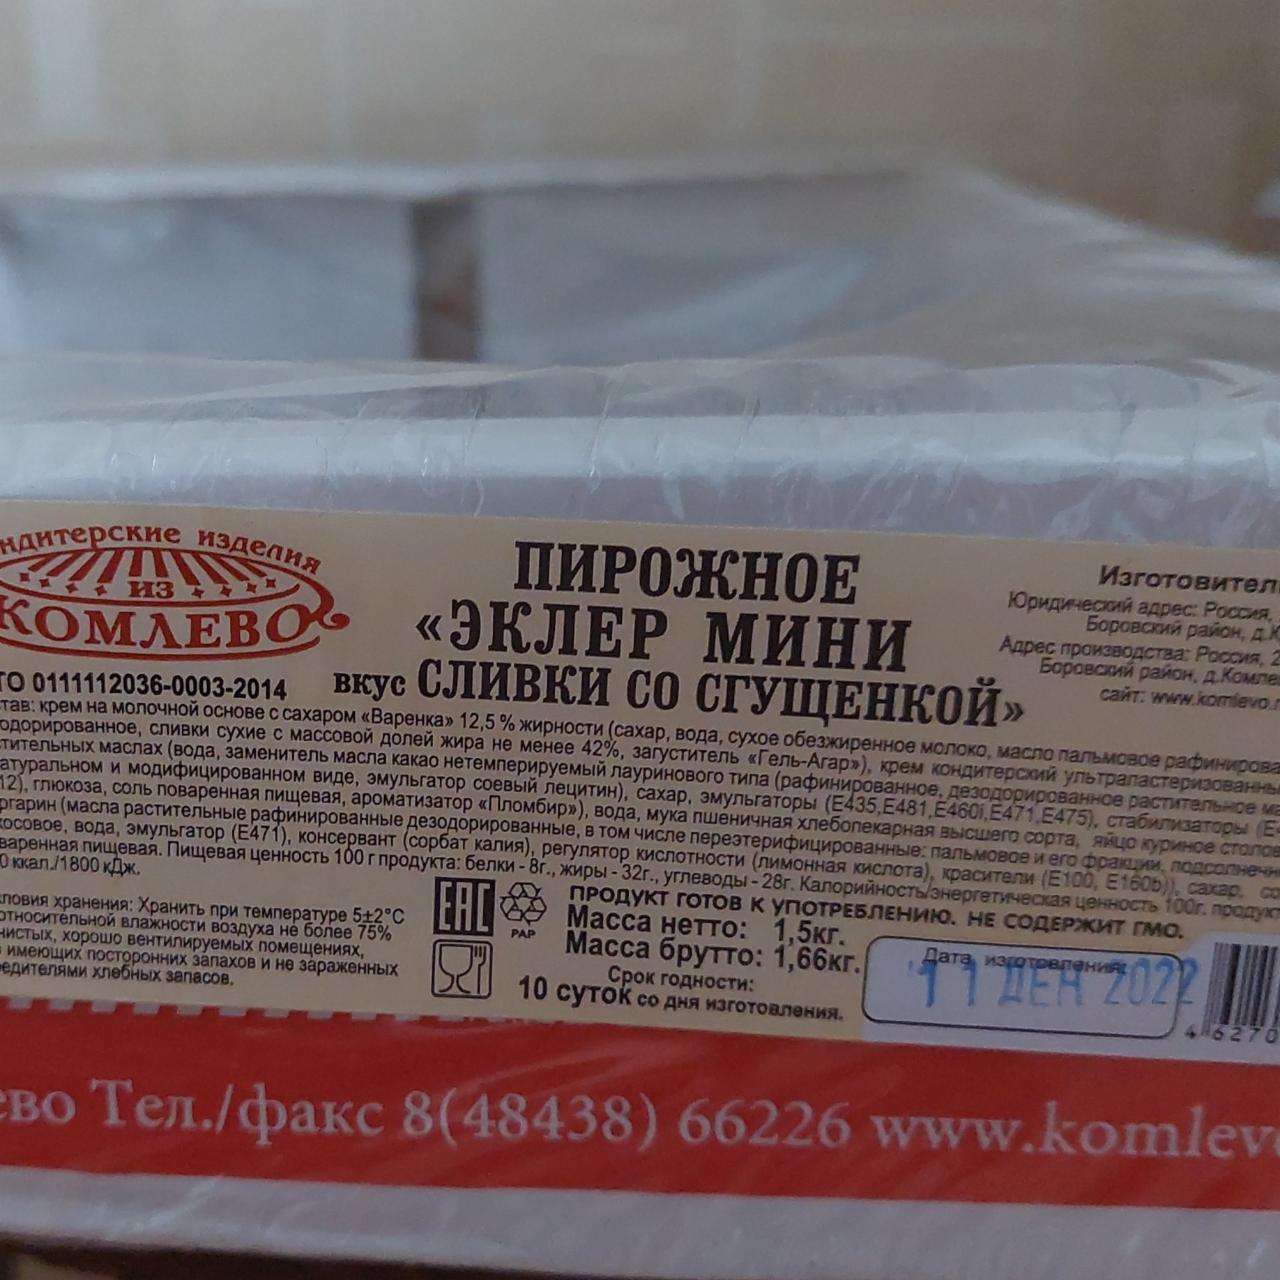 Фото - Пирожное эклер мини сливки со сгущенкой из Комлево